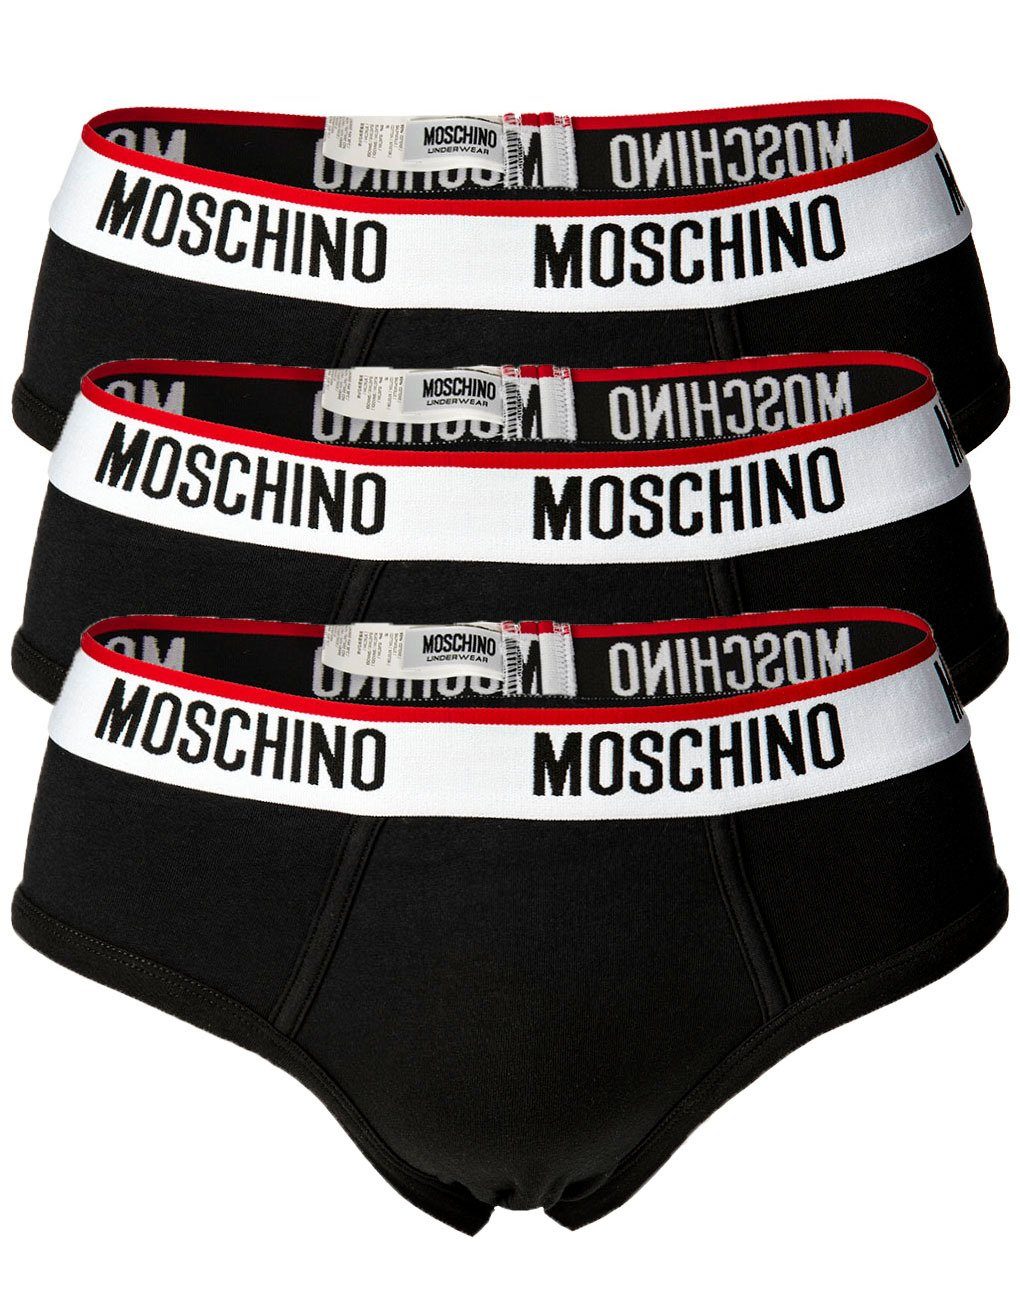 Moschino Slip Herren Pack - Cotton Slips Unterhose, 3er Briefs, Schwarz